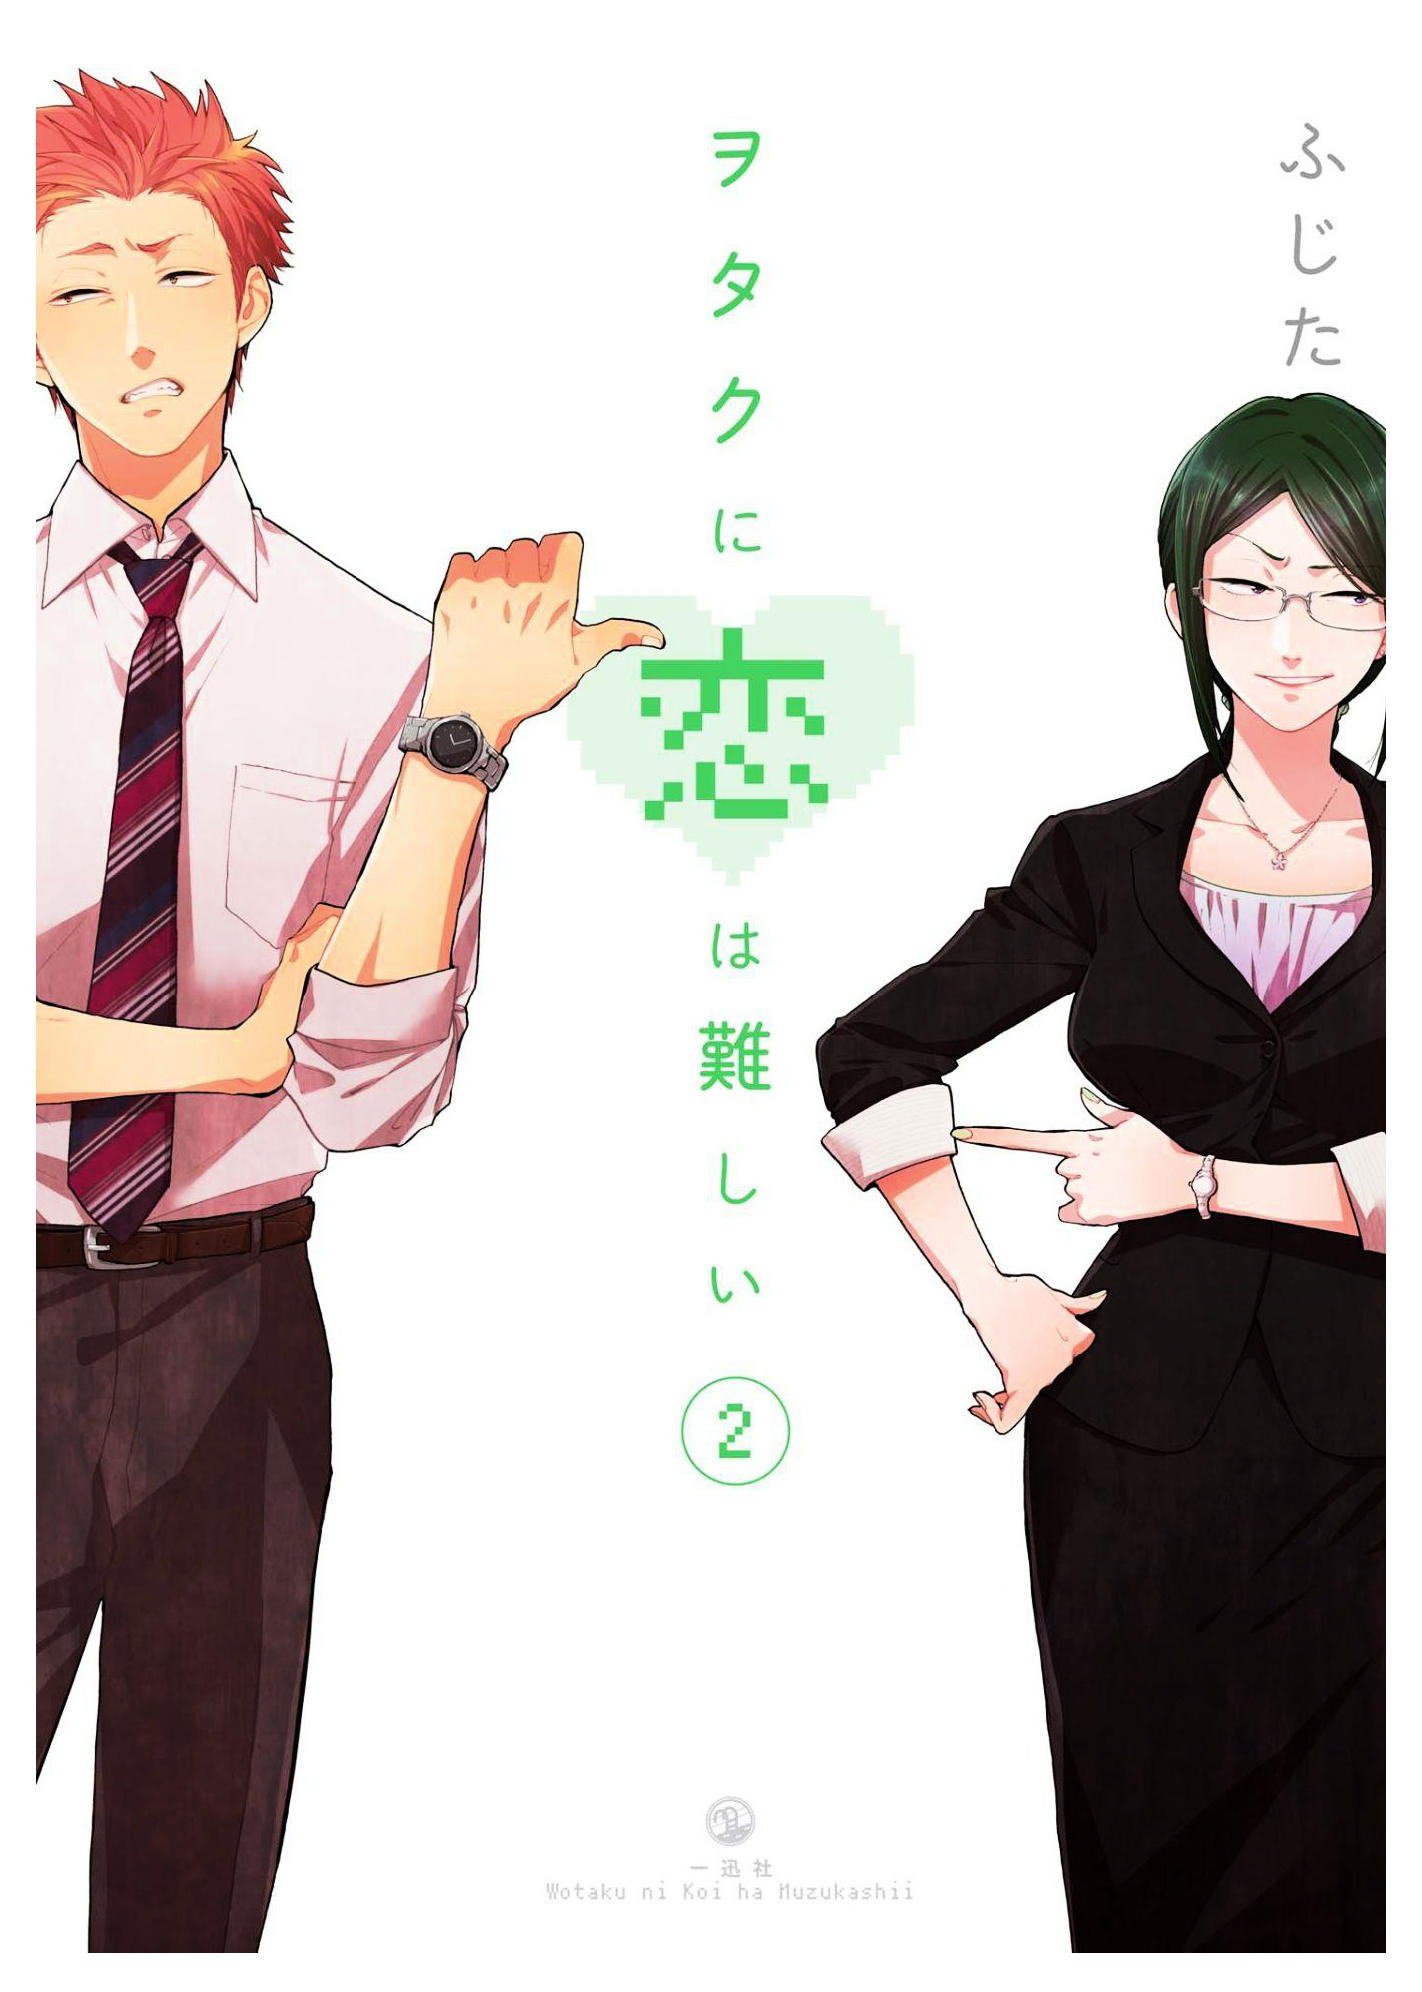 Read Wotaku Ni Koi Wa Muzukashii Chapter 81 on Mangakakalot